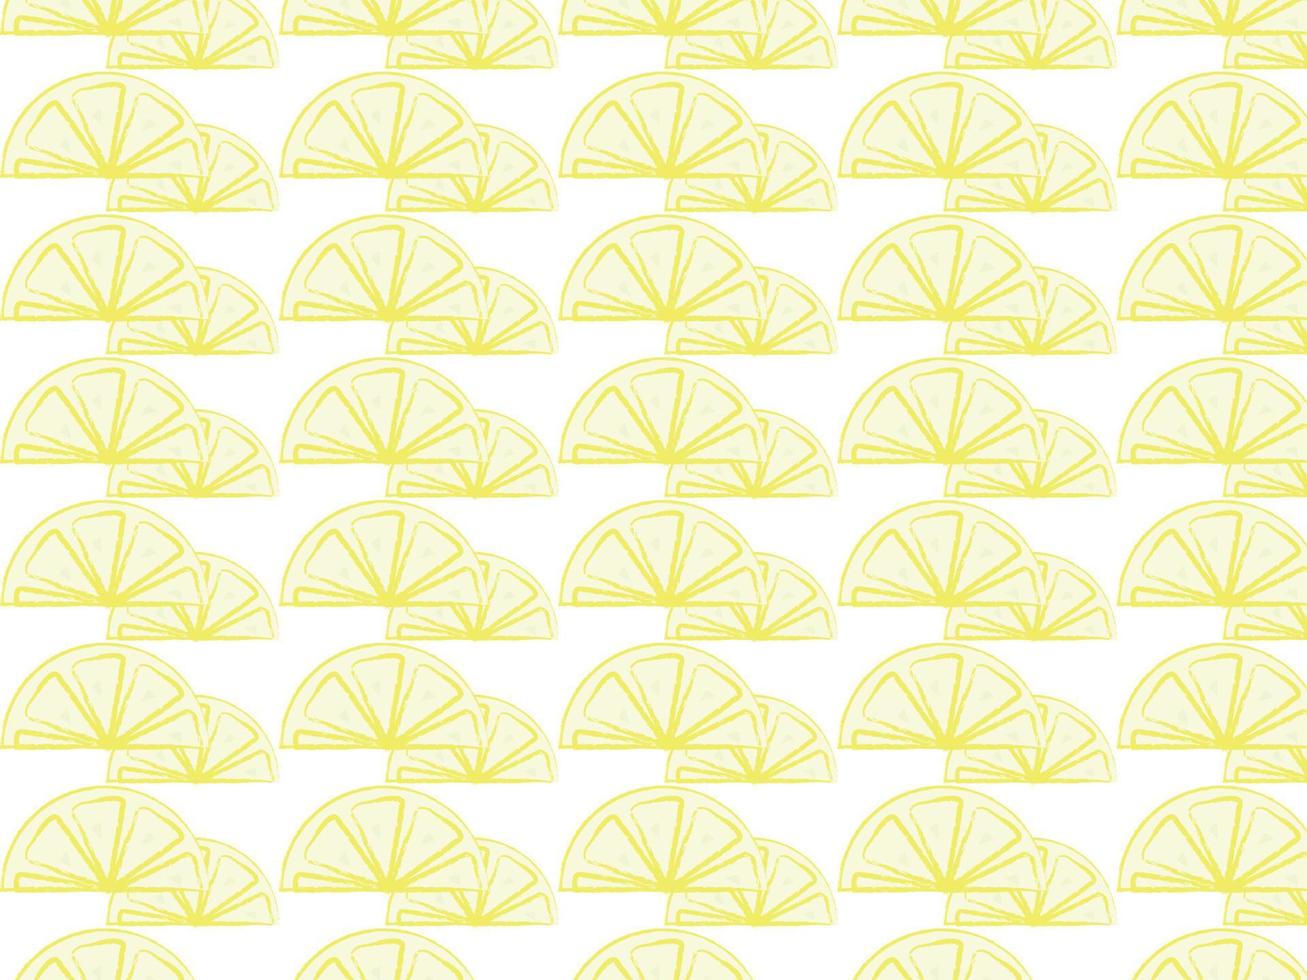 Lemon wallpaper, illustration, vector on white background.